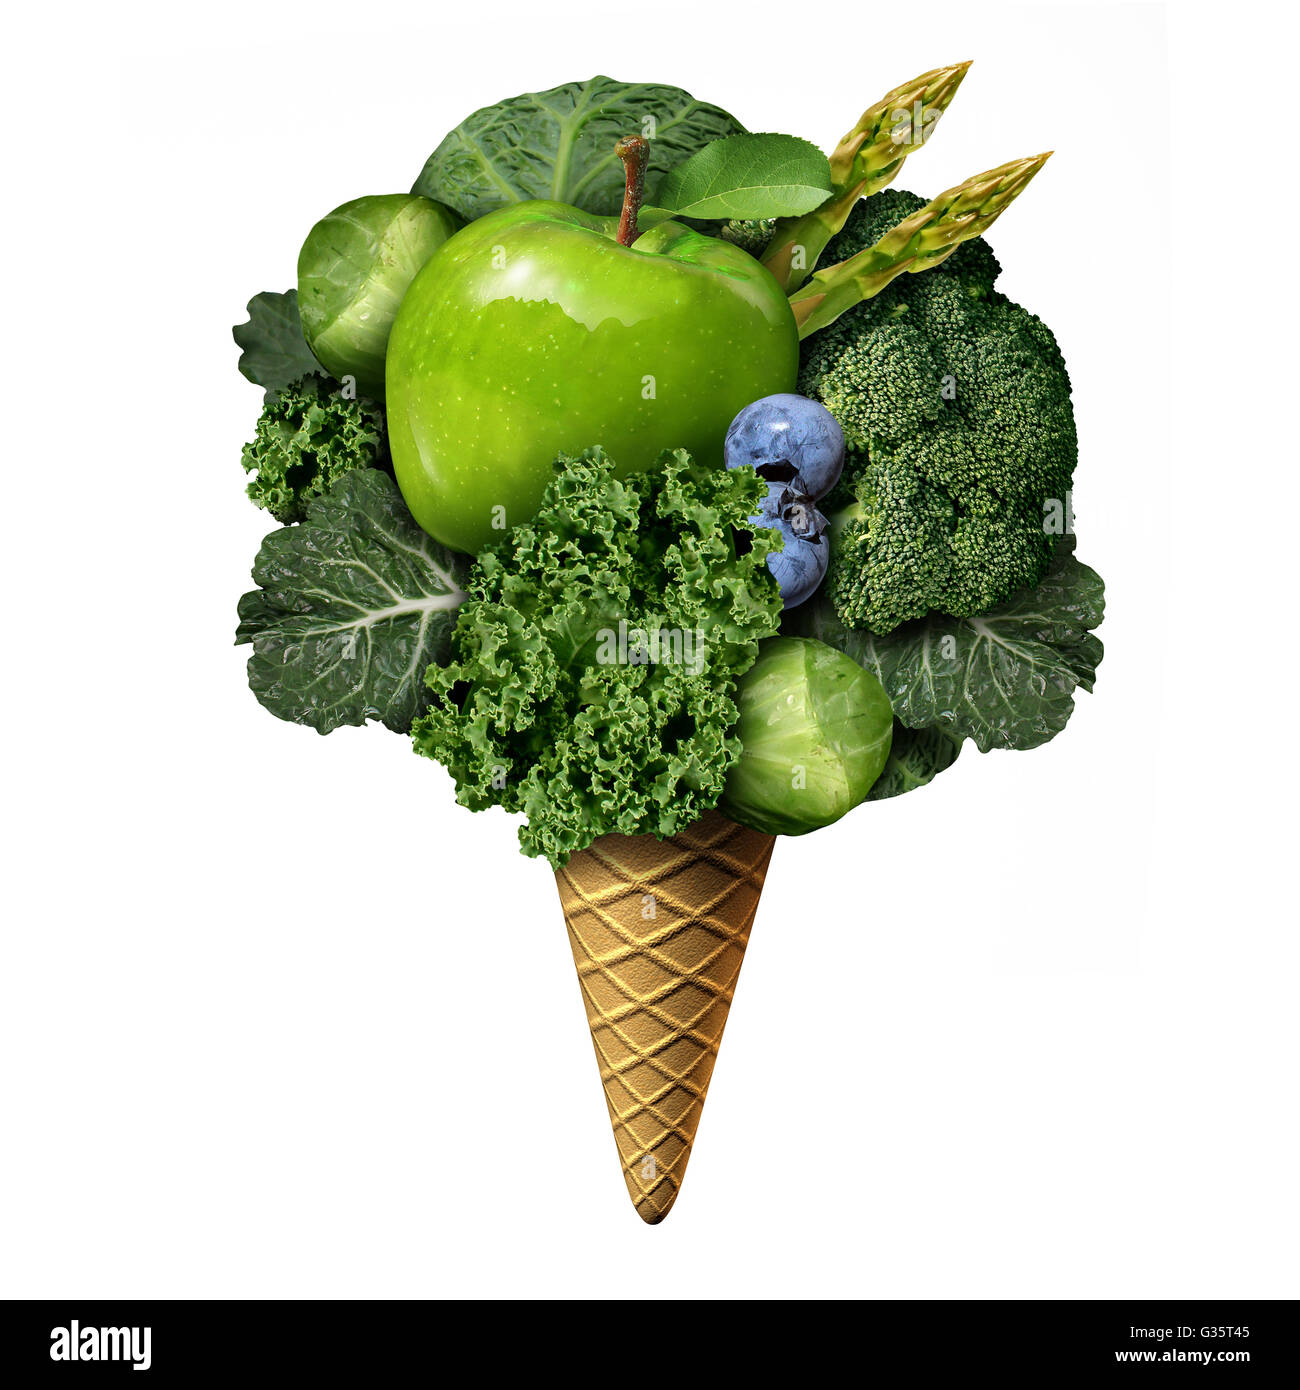 Sommer gesunde Ernährung Konzept als grüne Frucht und Gemüse behandelt als nahrhafte Snacks als Gesundheits- und Fitnesss Metapher für gute Essgewohnheiten während der heißen Tage mit 3D Abbildung Elemente als ein Eis auf einem Kegel geformt. Stockfoto